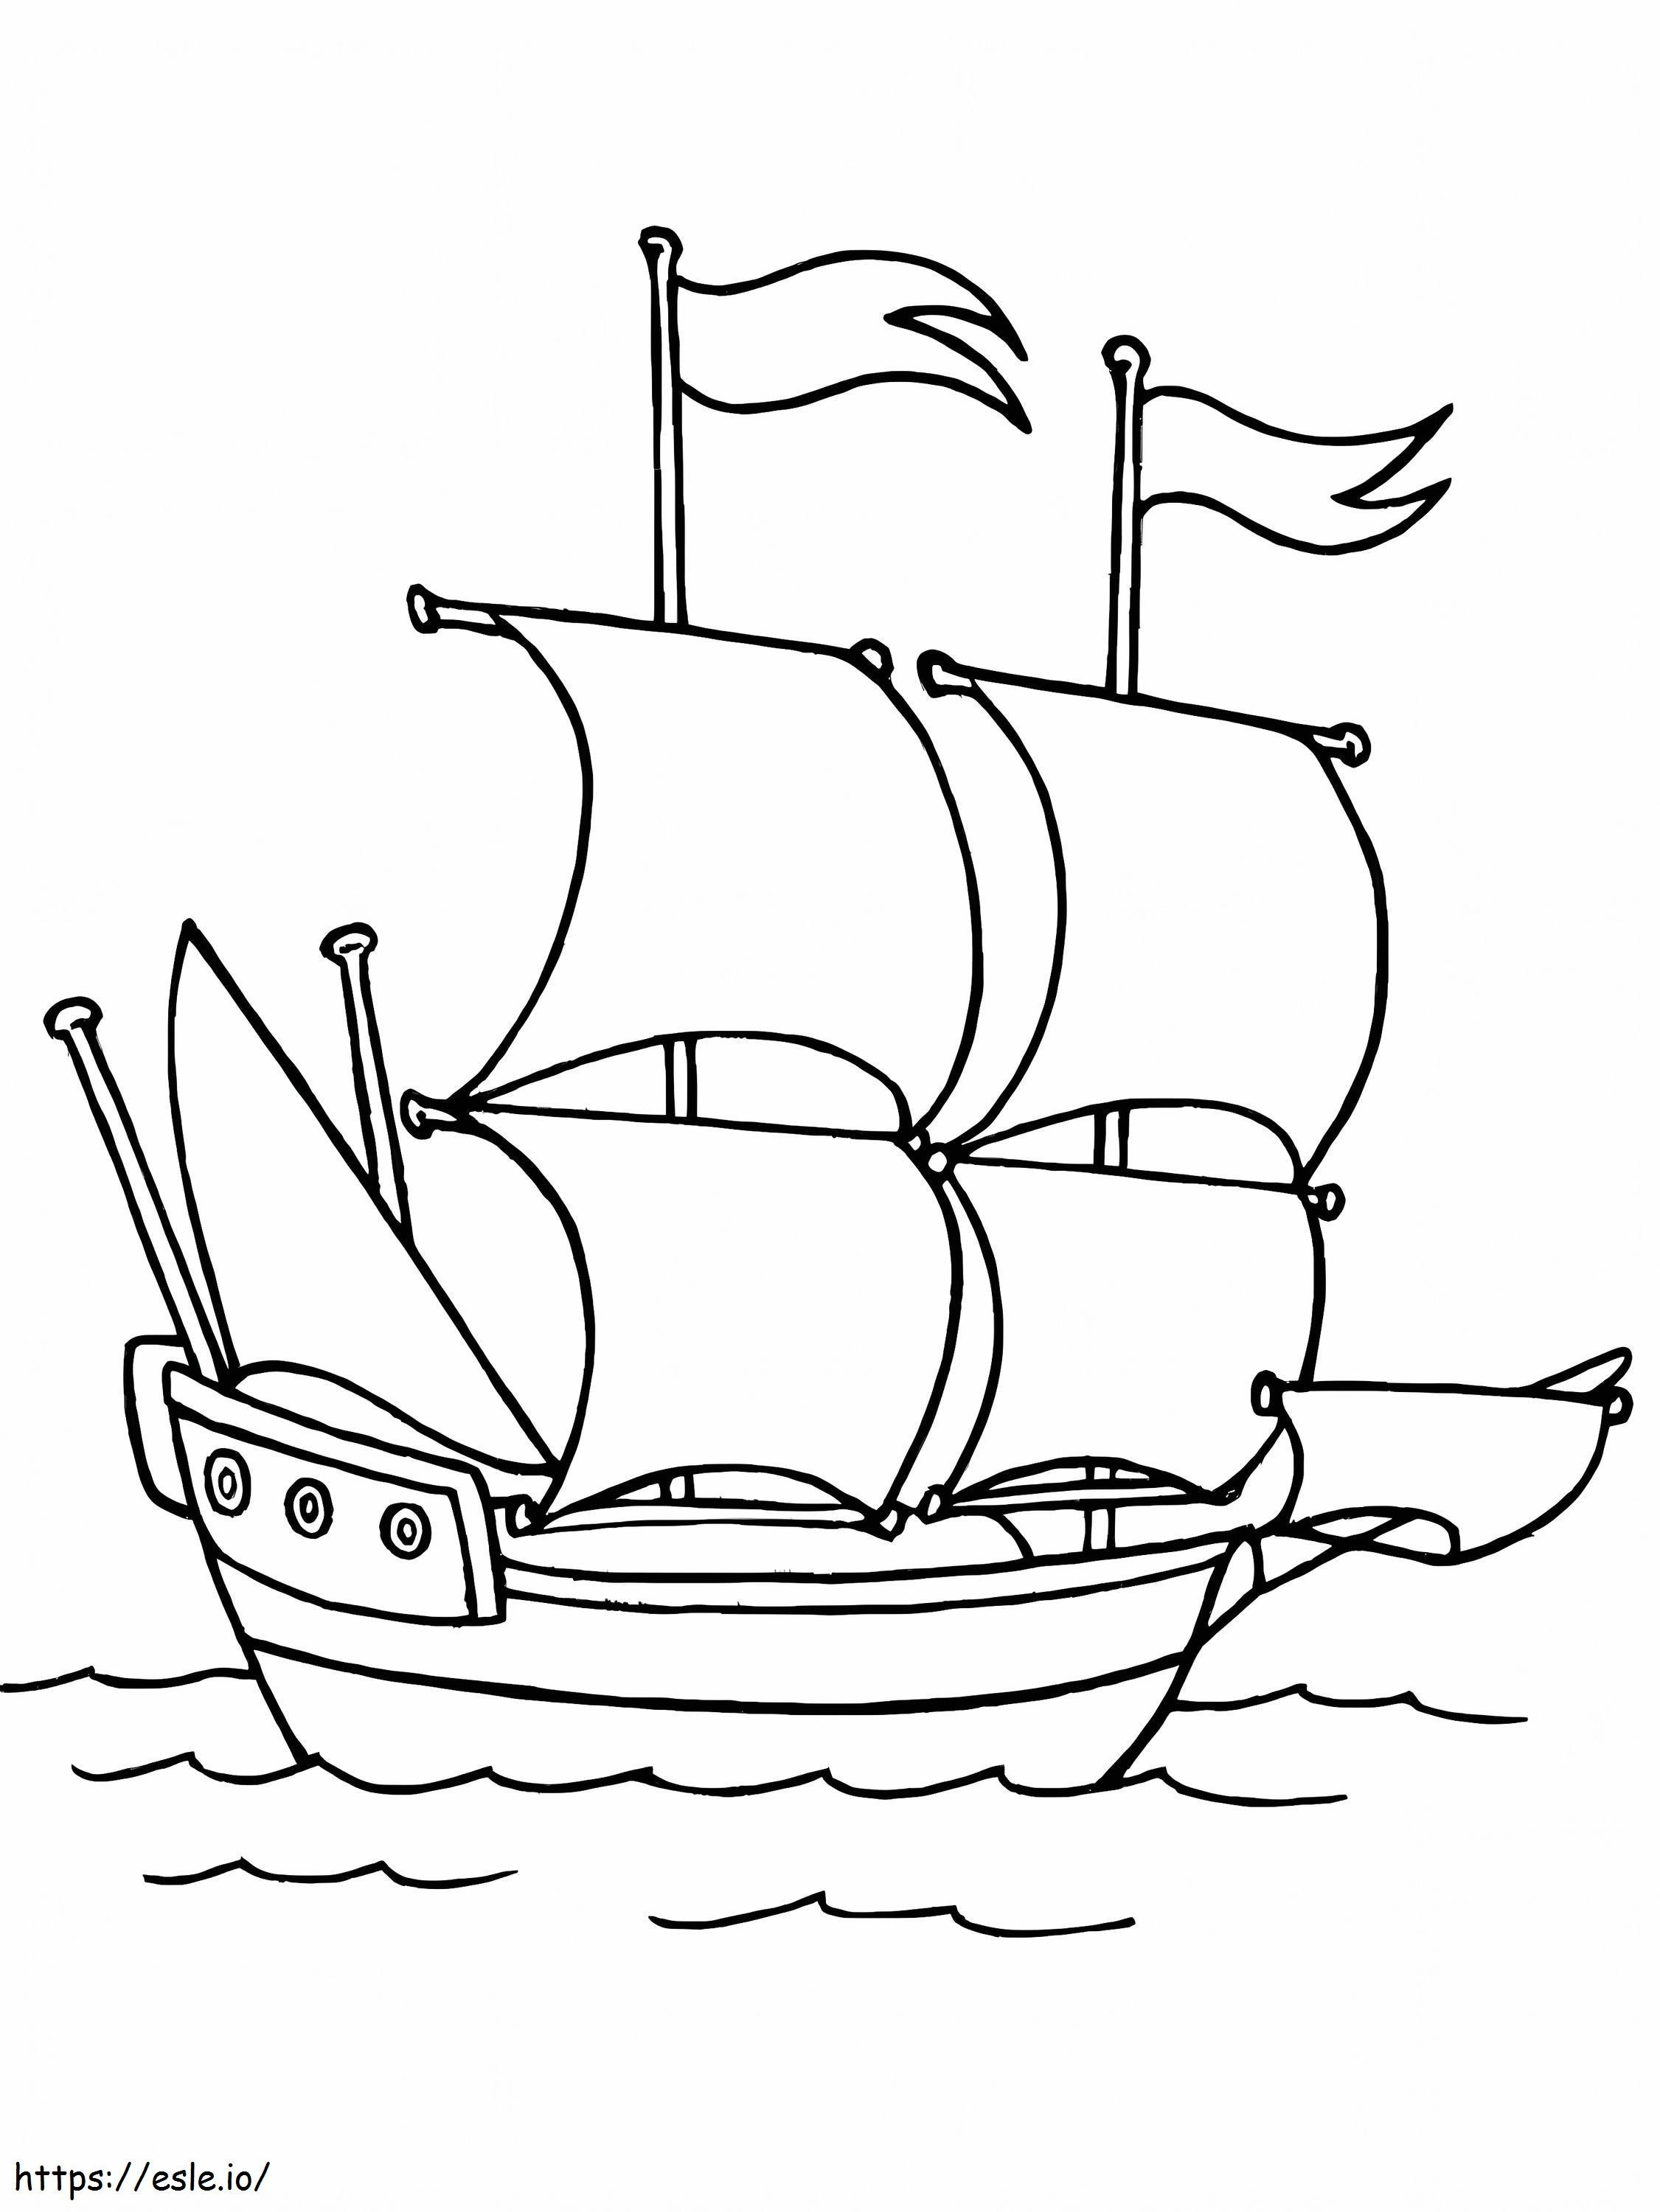 Die Mayflower 2 ausmalbilder